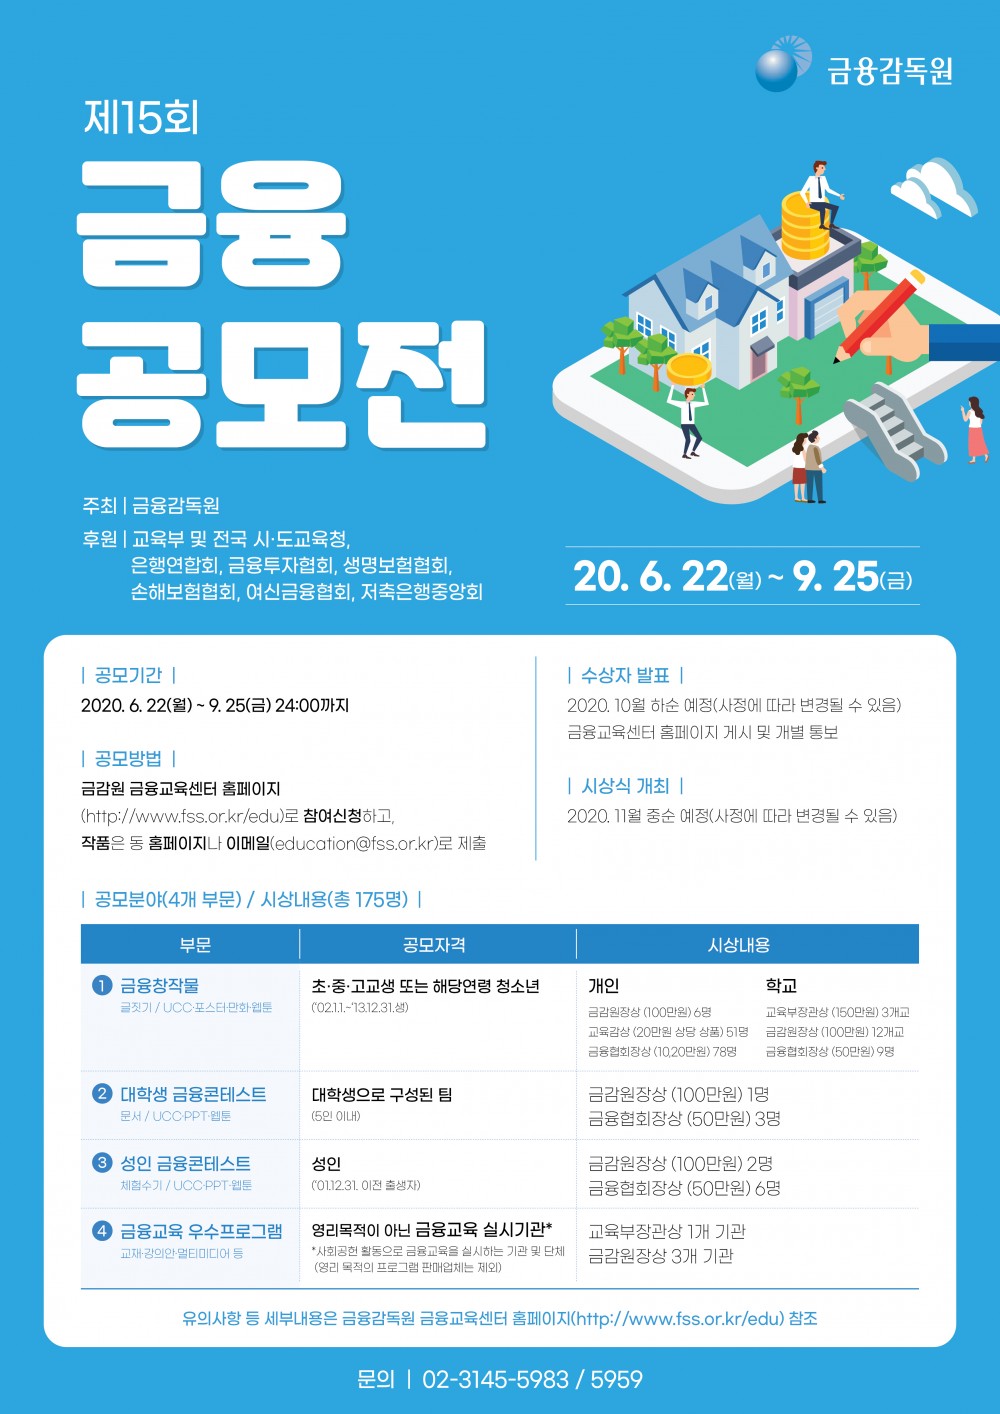 제15회 금융공모전 개최(포스터)